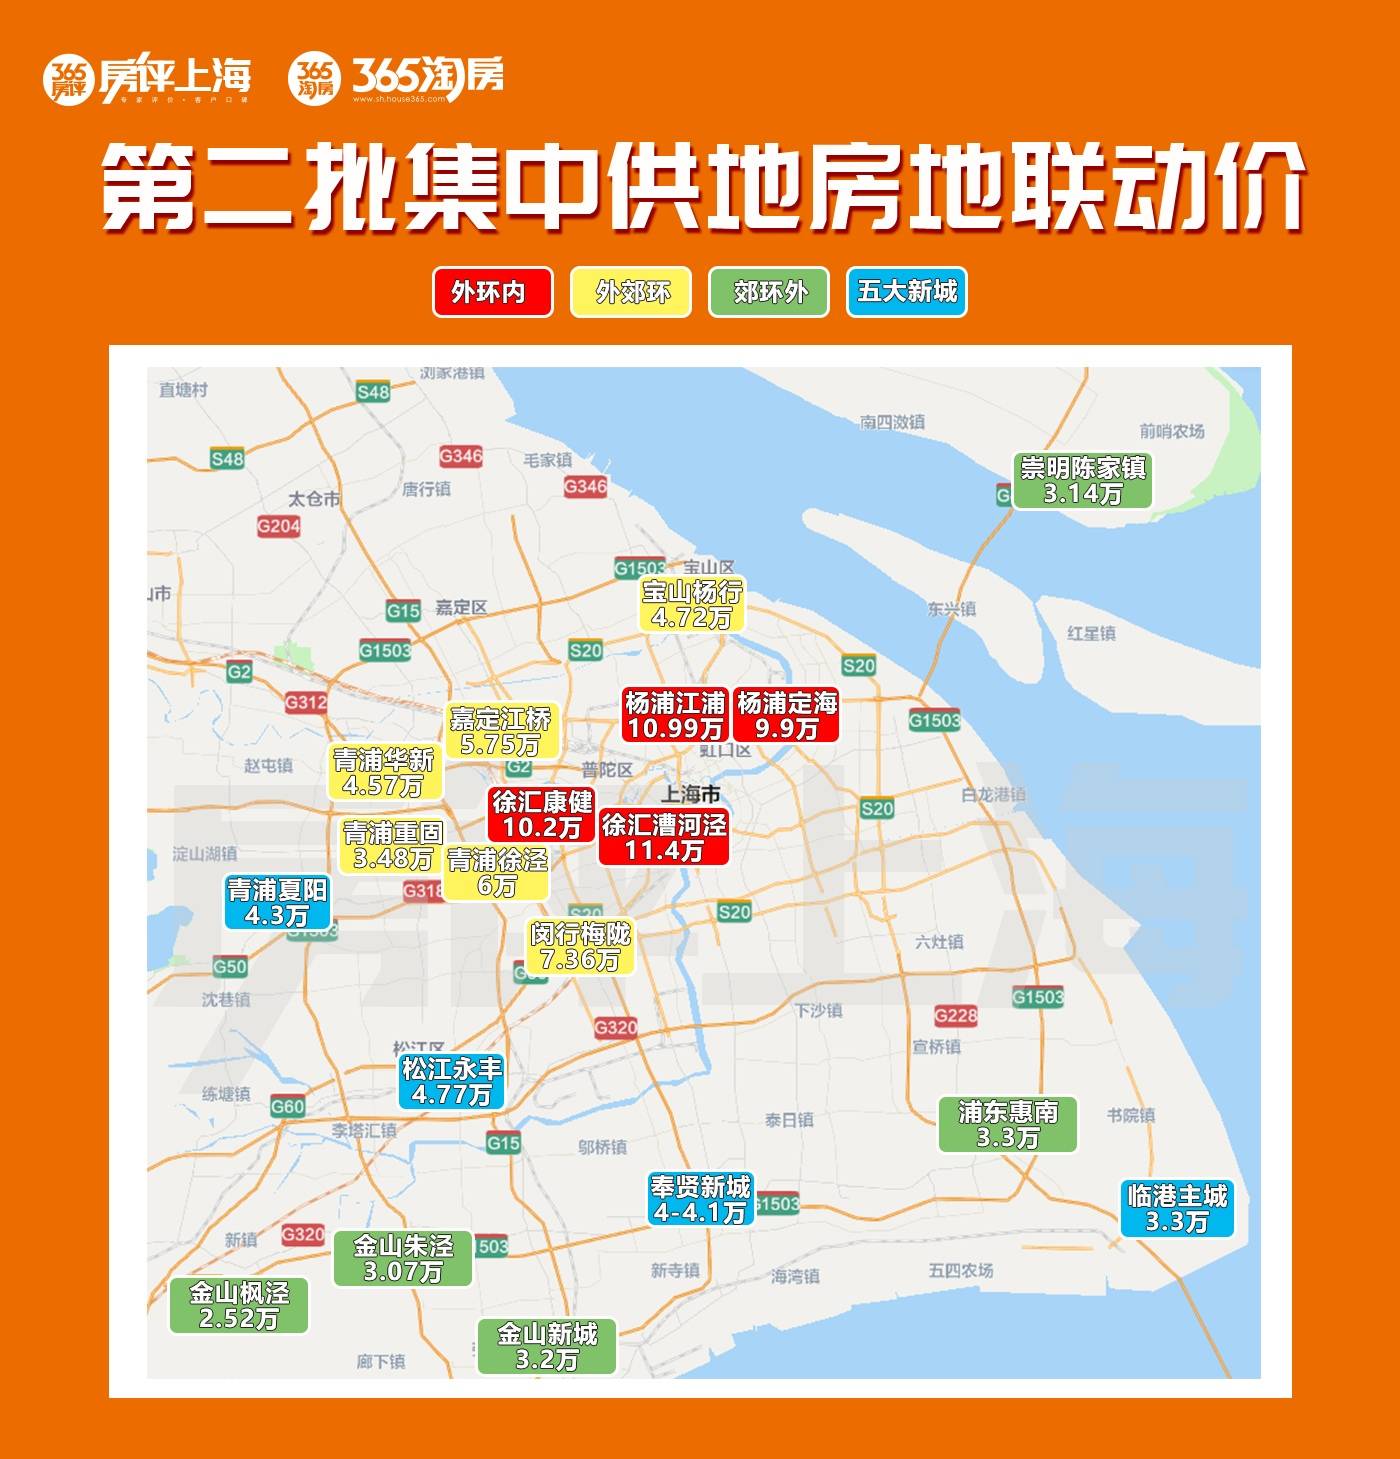 上海明年房价清晰可见附寻宝地图